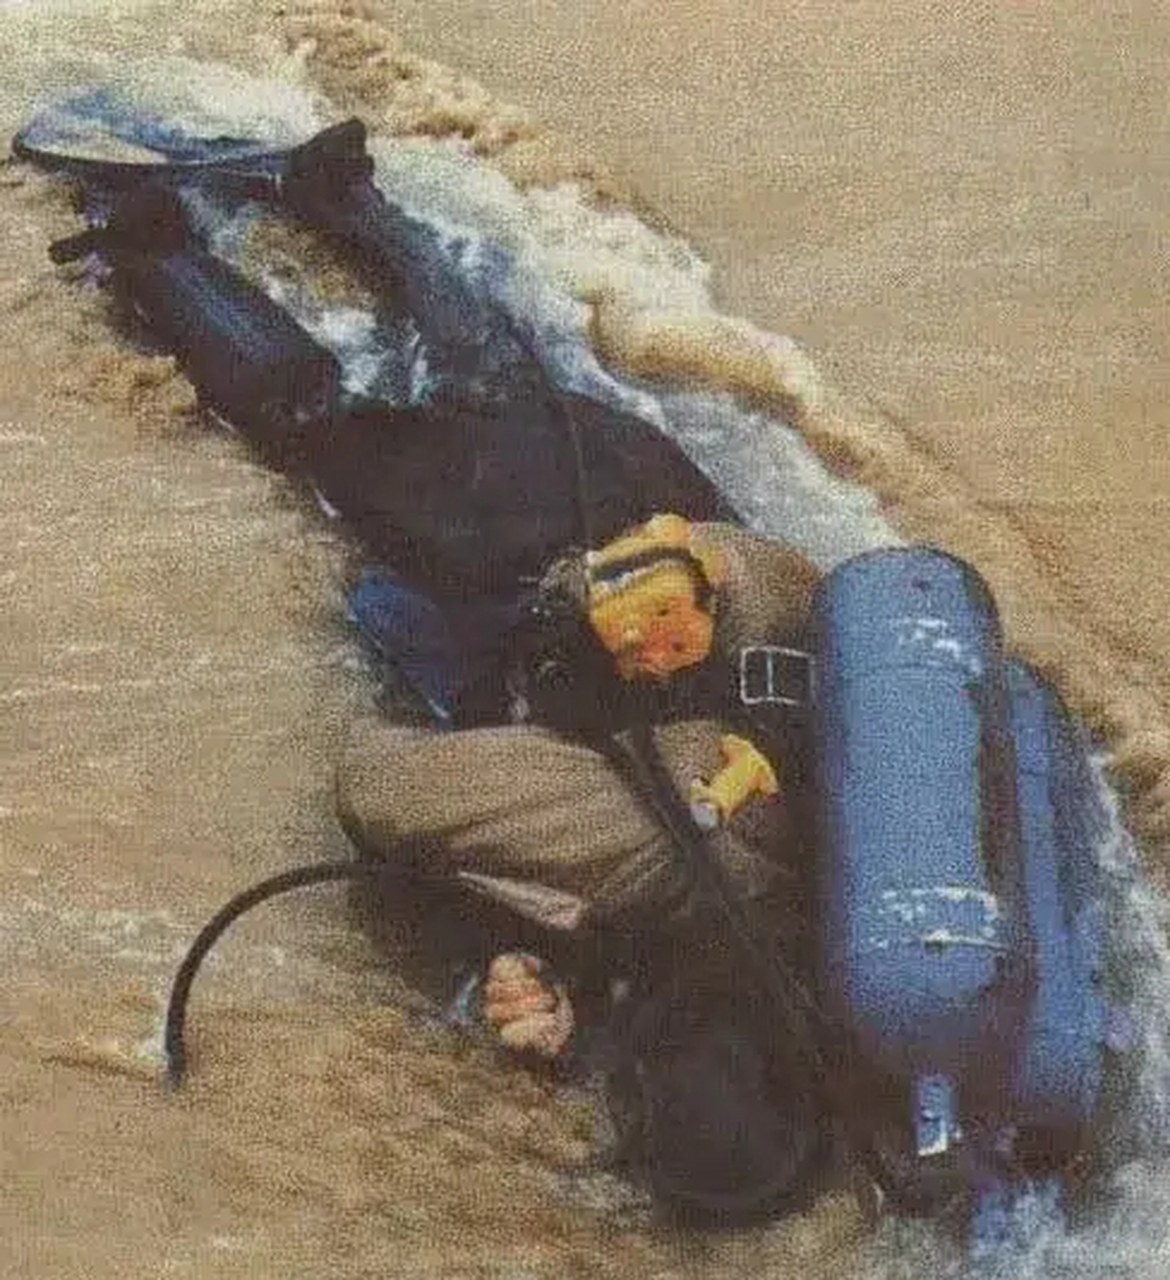 1998年,韩国海滩,  被洋流冲上岸的朝鲜蛙人  男子殒命,父母痛,爱人